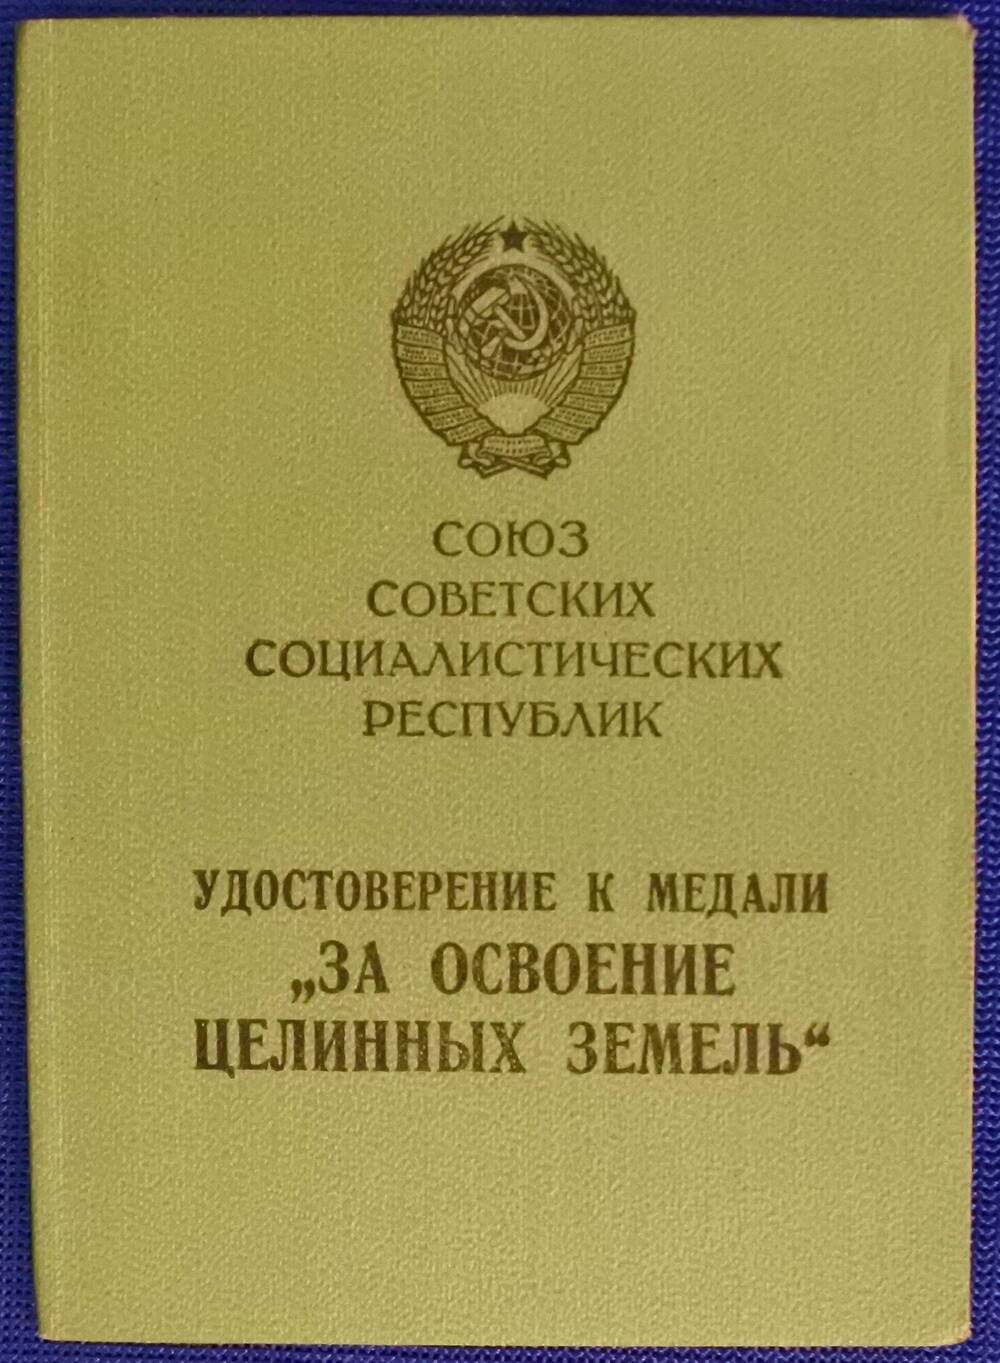 Удостоверение к медали «За освоение целинных земель»